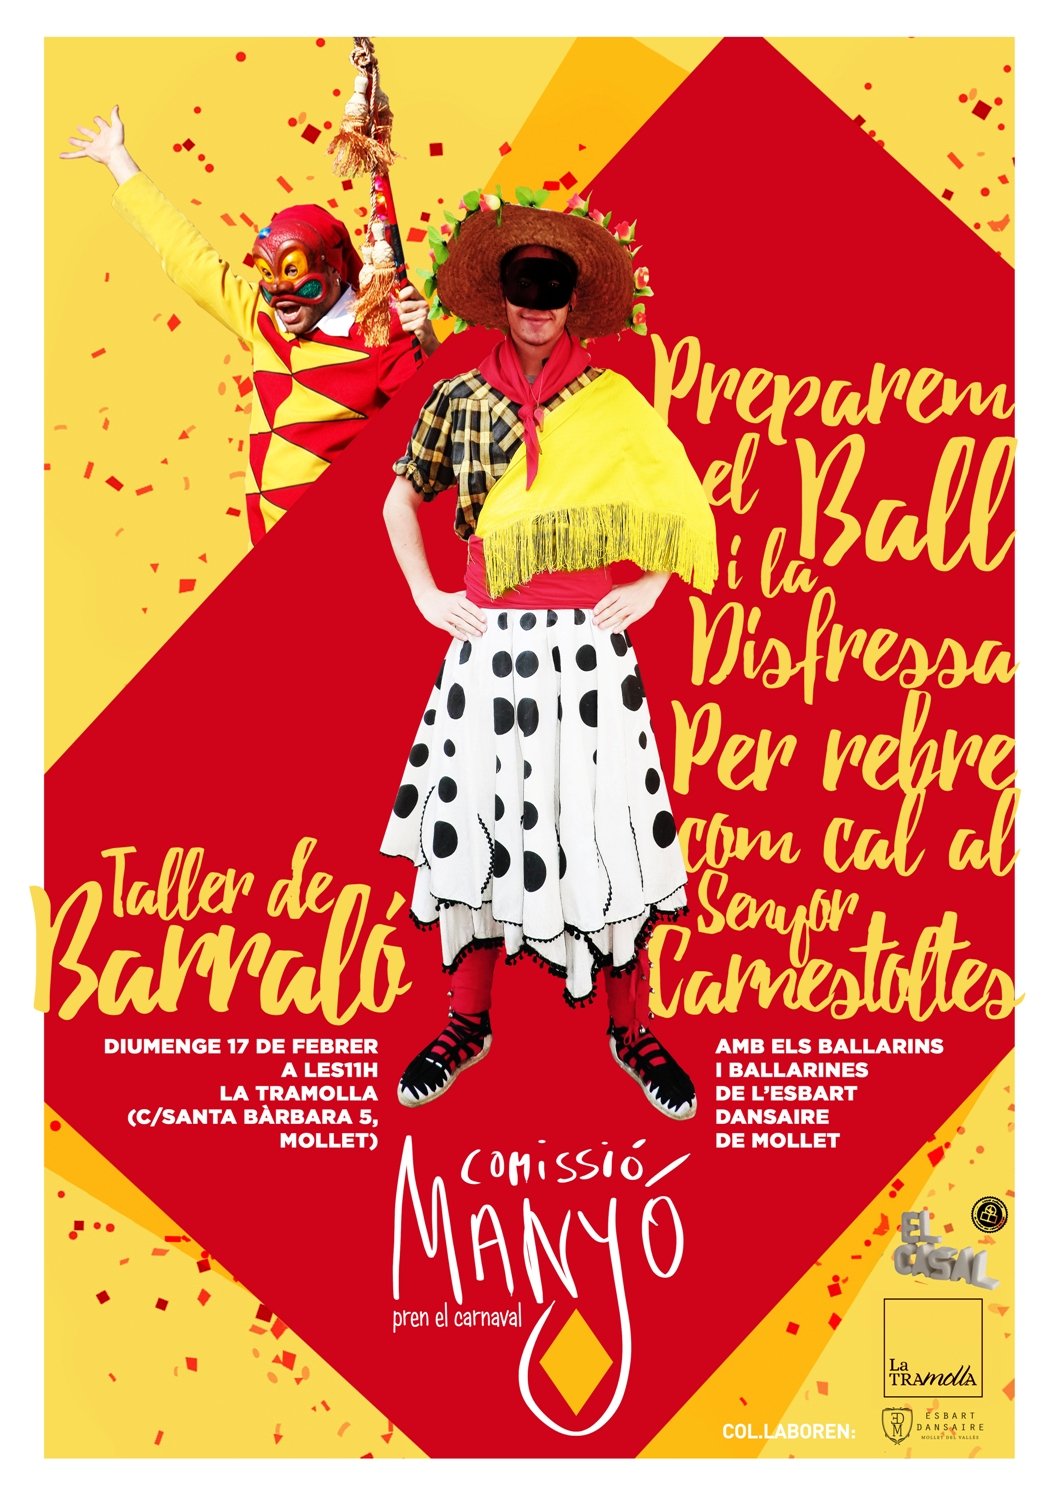 Comencem les activitats pel Carnaval 2019: Taller de Barraló aquest diumenge a La Tramolla!